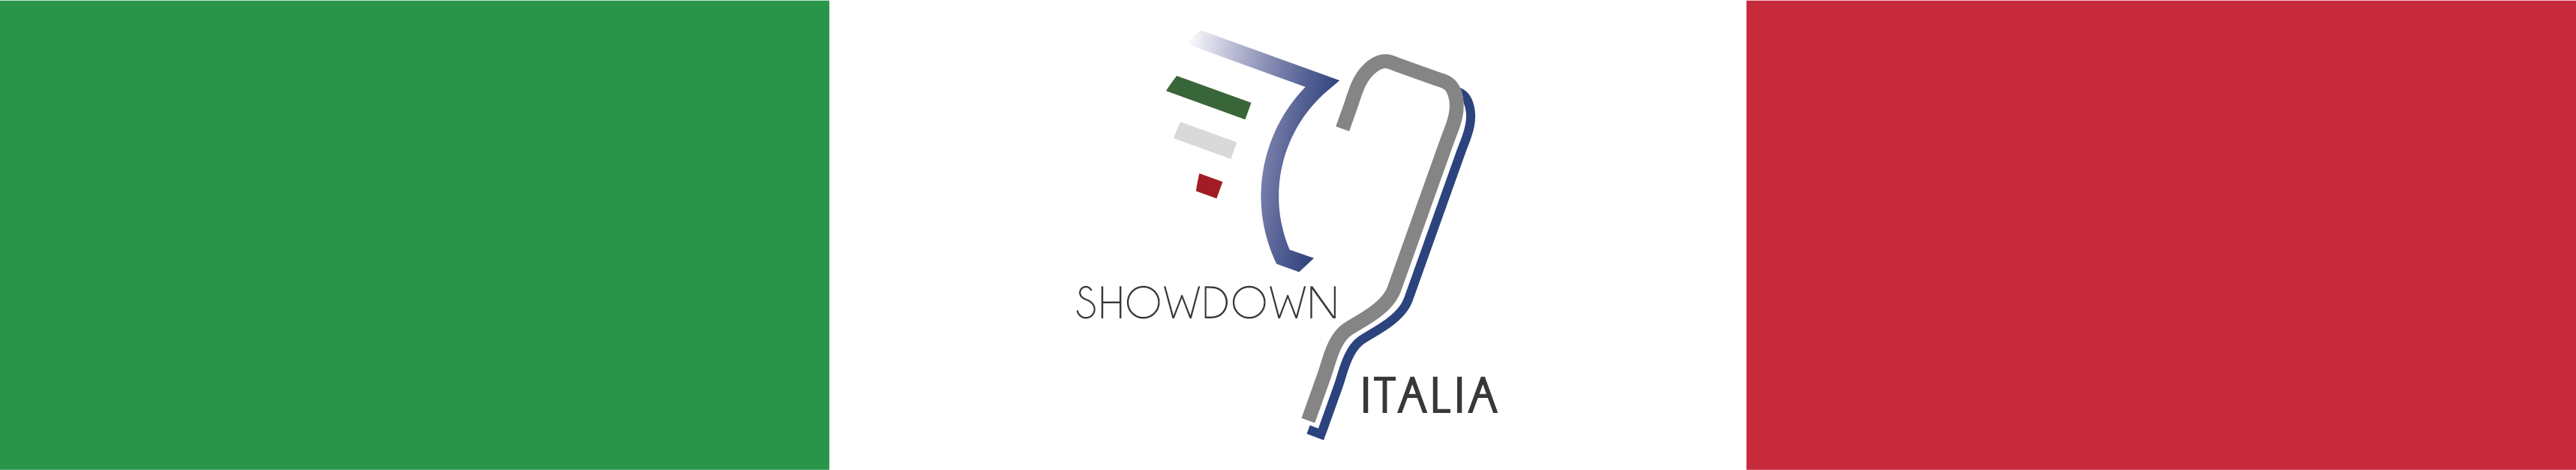 Tricolore italiano con al centro una paletta da Showdown alata e la scritta Showdown Italia.